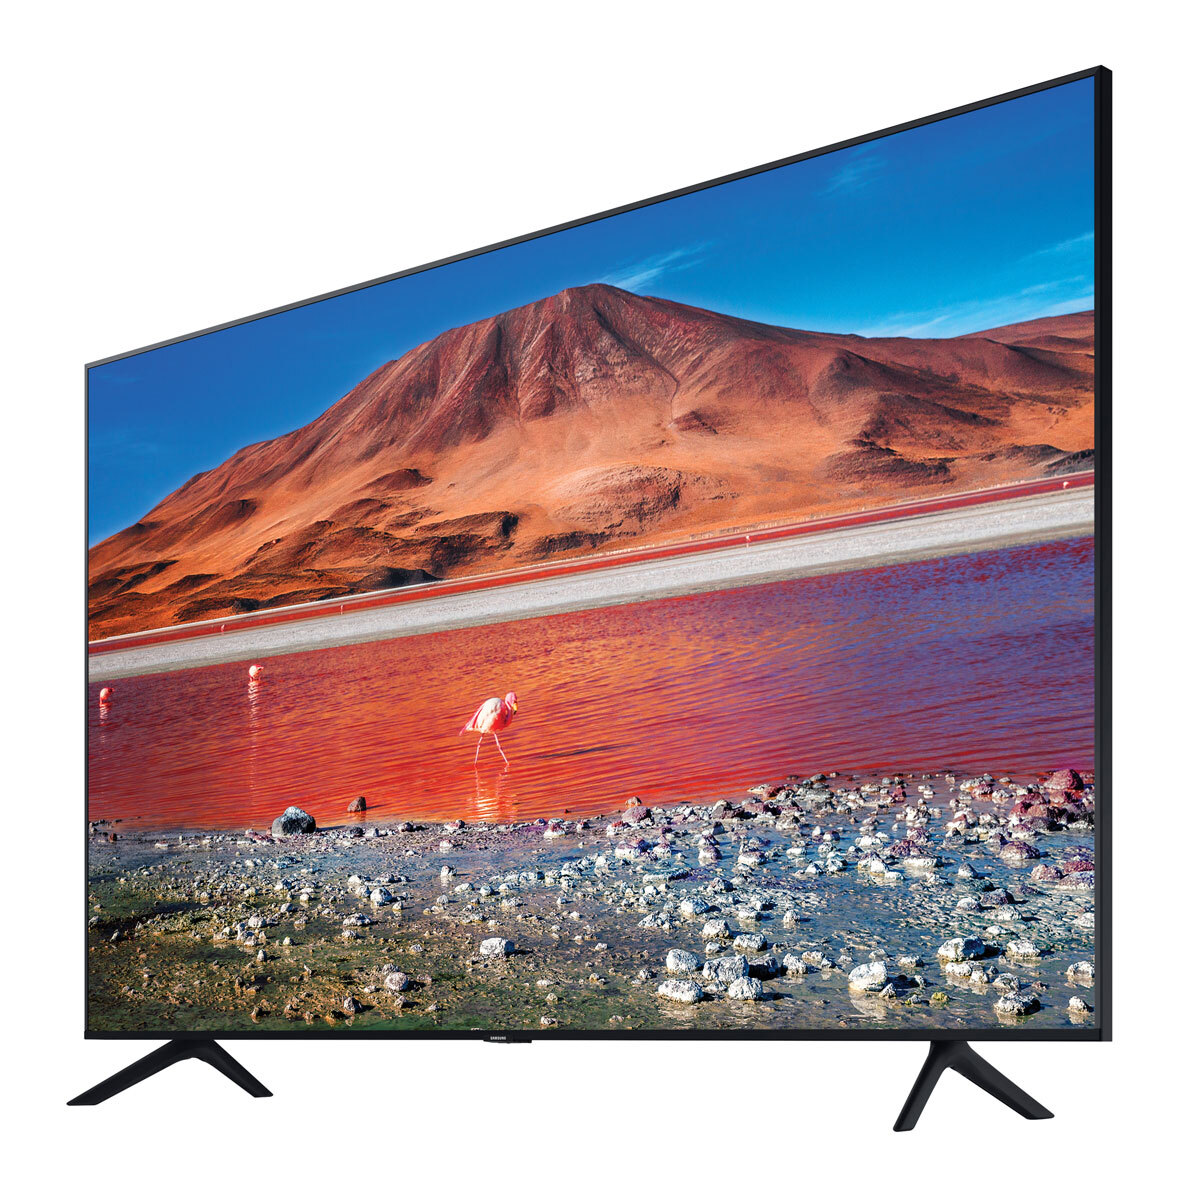 Samsung Ue70tu7100kxxu 70 Inch 4k Ultra Hd Smart Tv Costco Uk